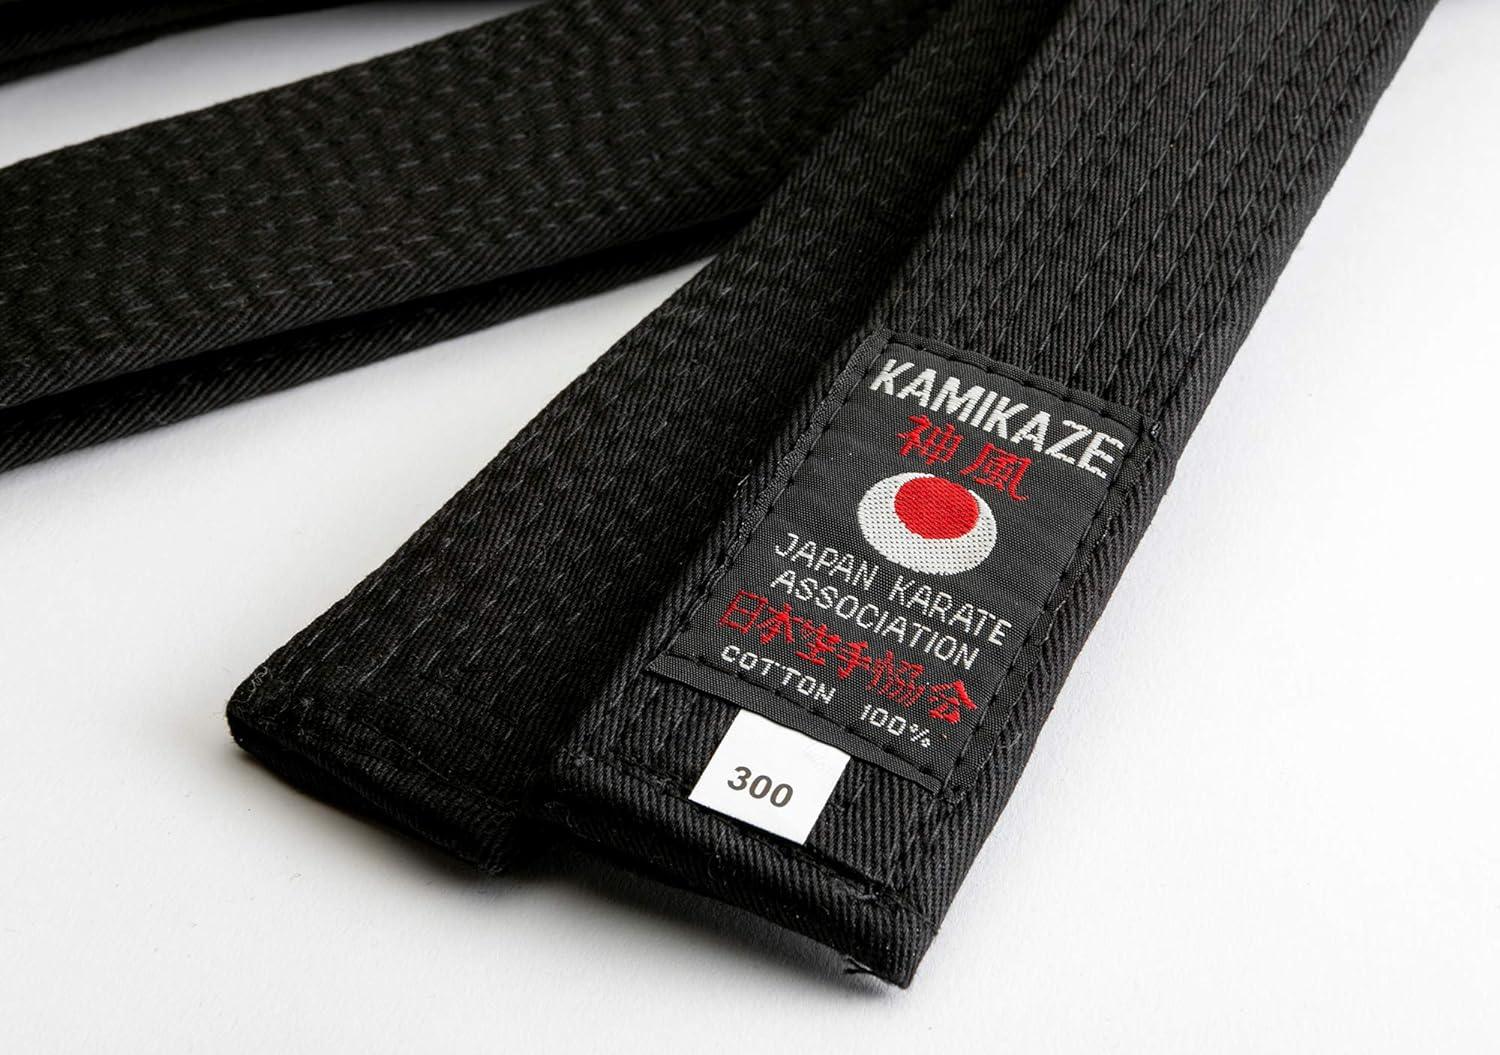 Ceinture noire Karate étiquette Shotokan - Kamikaze - Boutique des Arts Martiaux